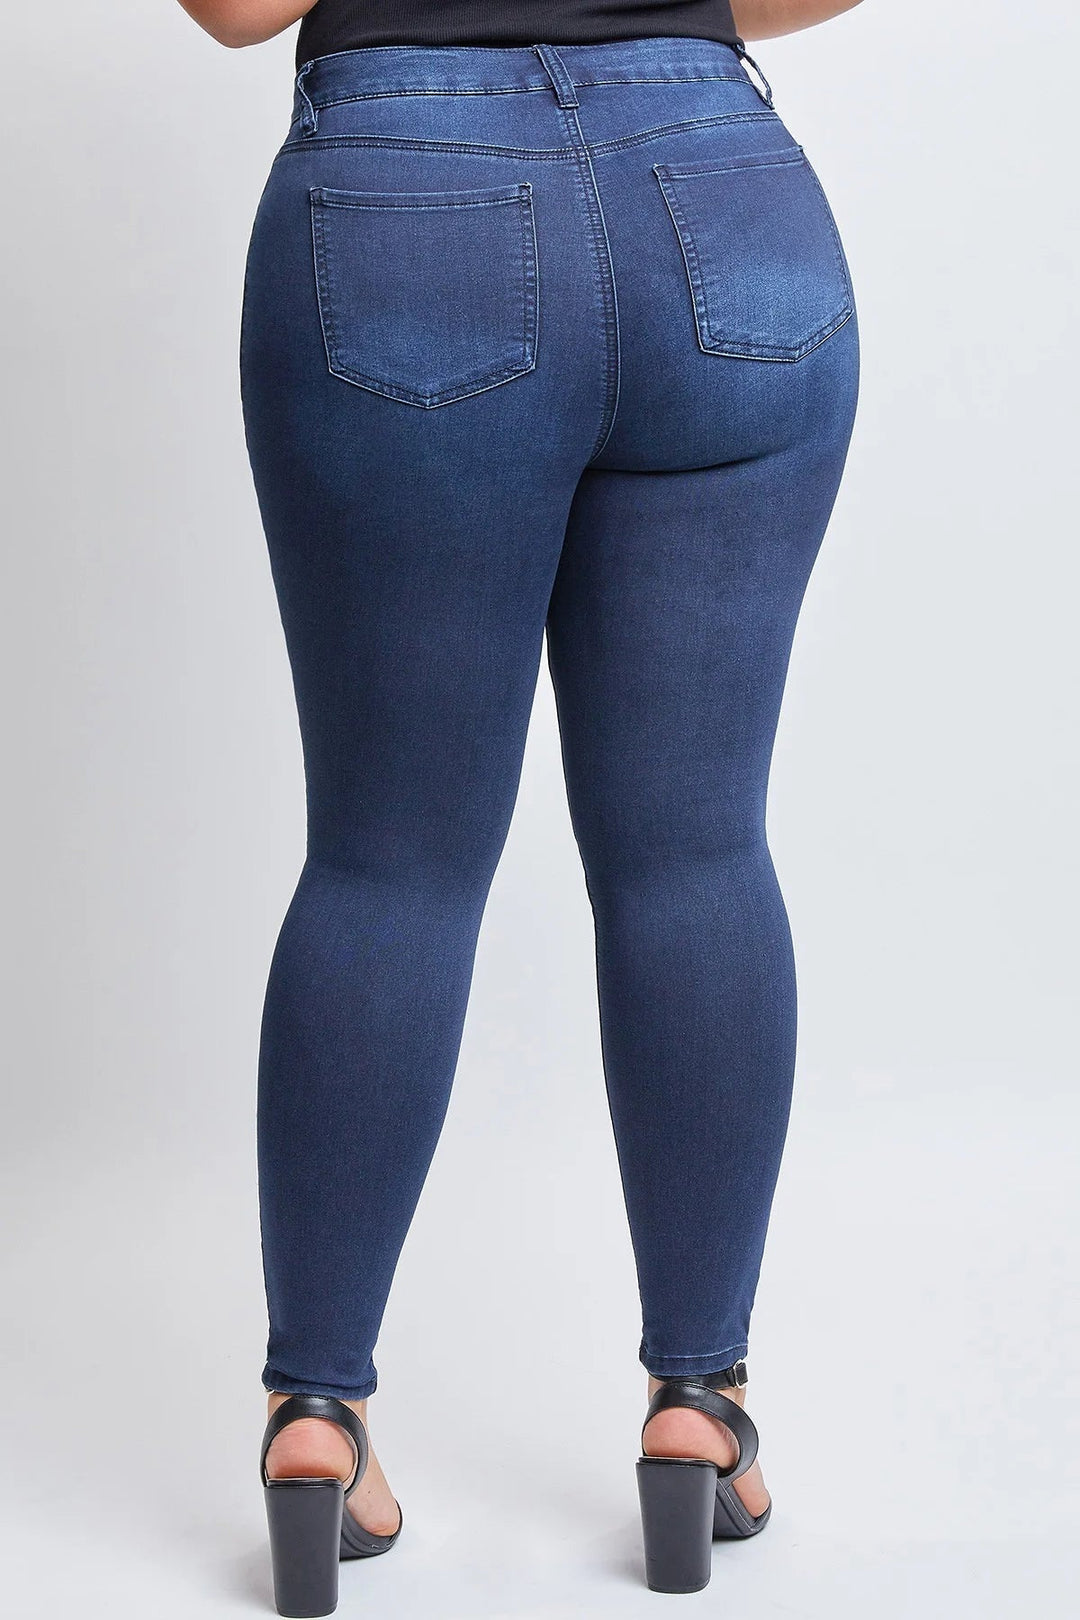 YMI Jeans Plus Size Hyper Denim Skinny Jean - Dark Indigo